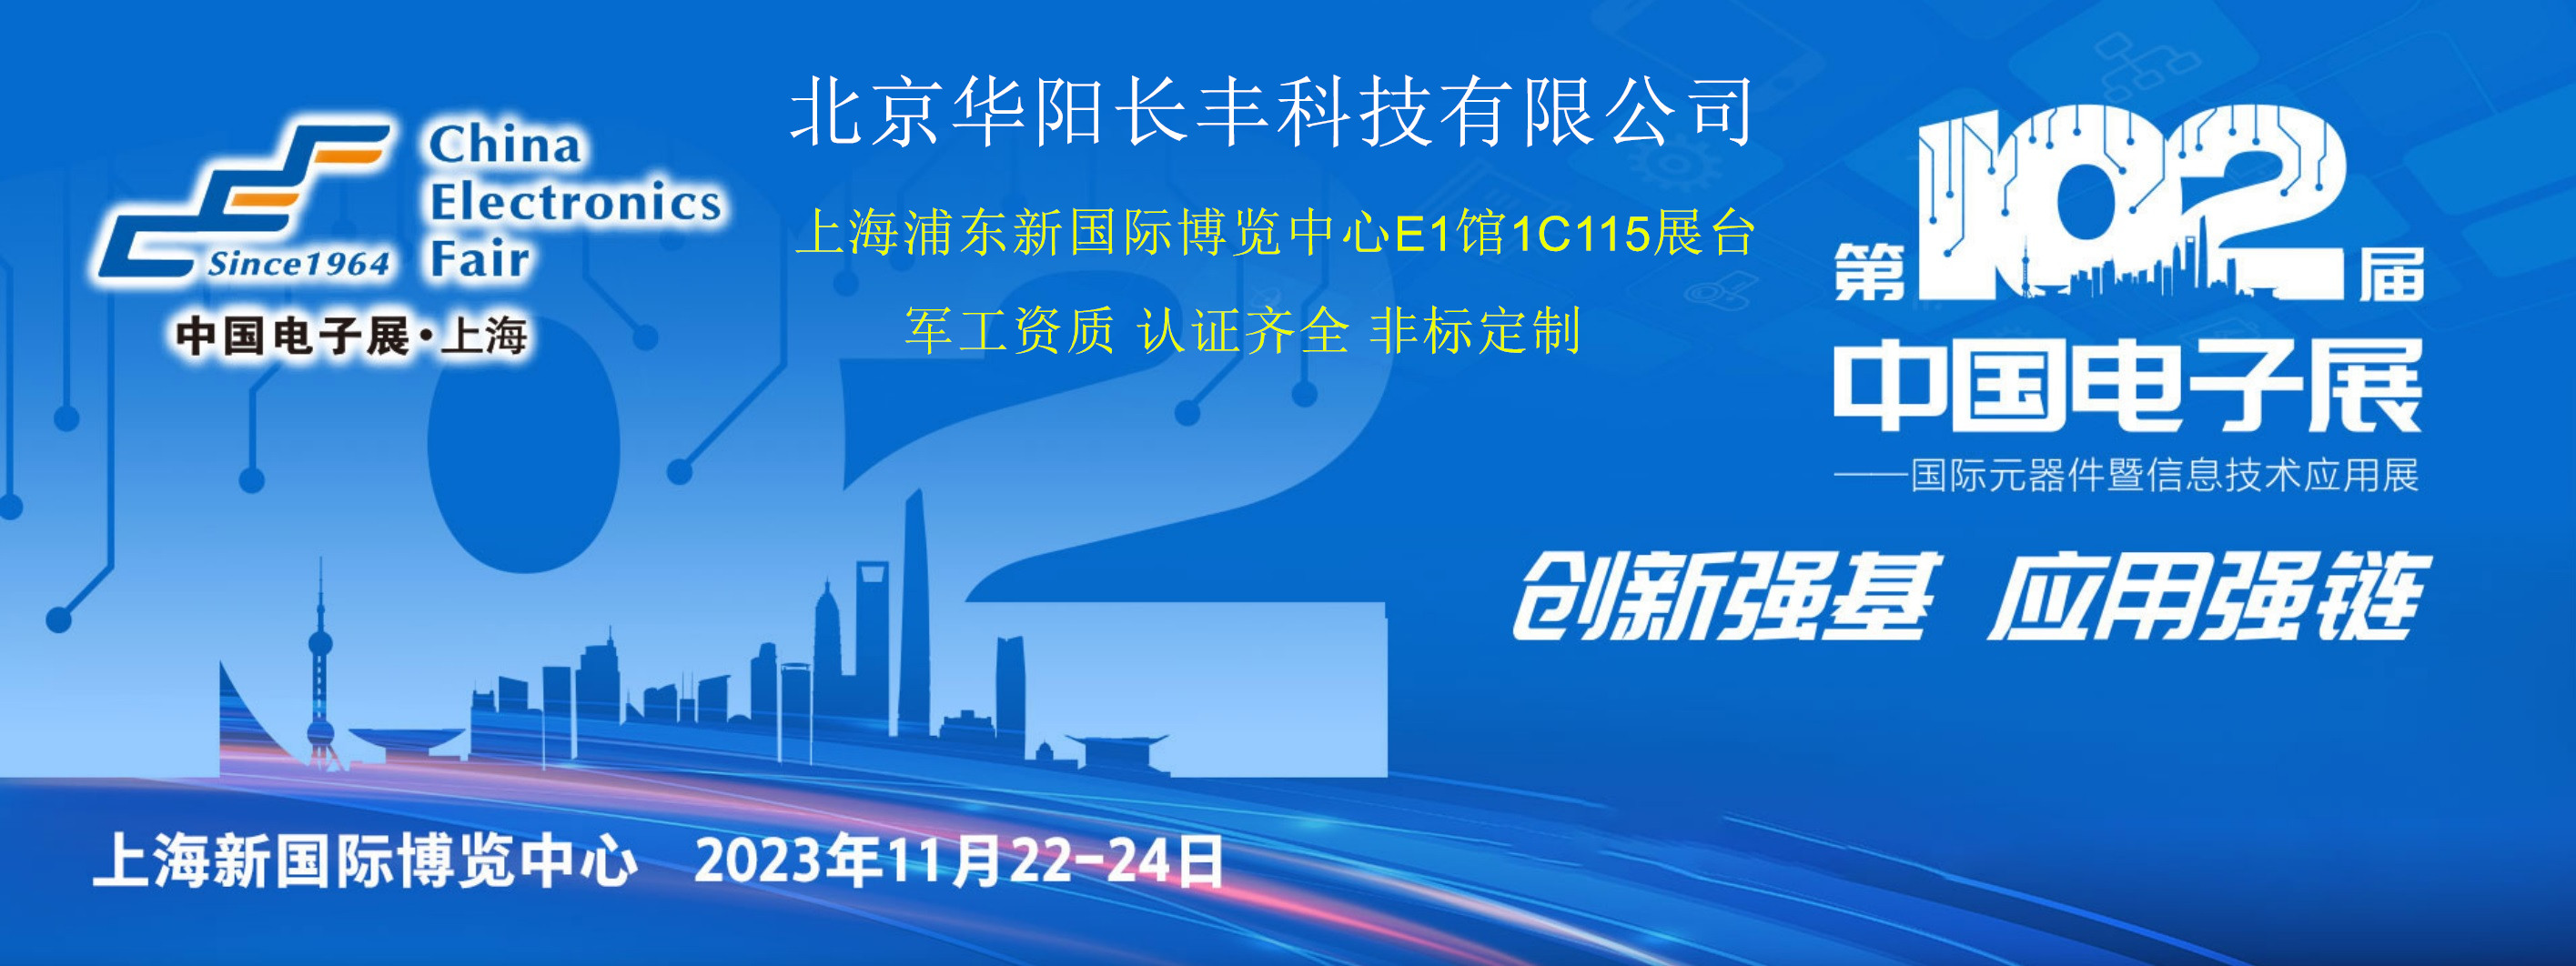 华阳长丰应邀参加2023年第102届上海电子展